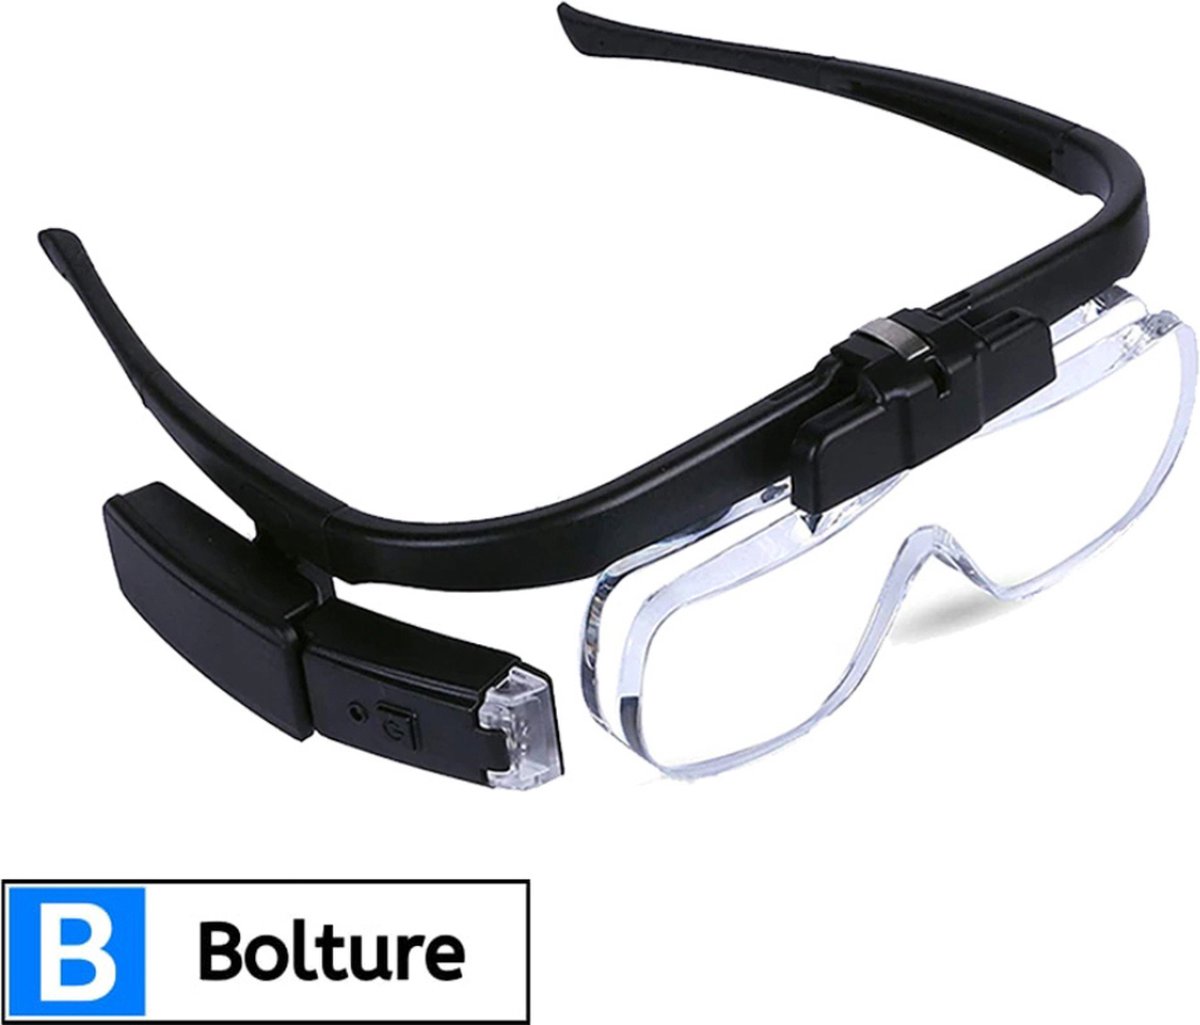 Bolture Loepbril met Led Verlichting - Vergrootglas Bril - Juweliersloep - Hoofdloep - Inclusief 6 Verschillende Lenzen